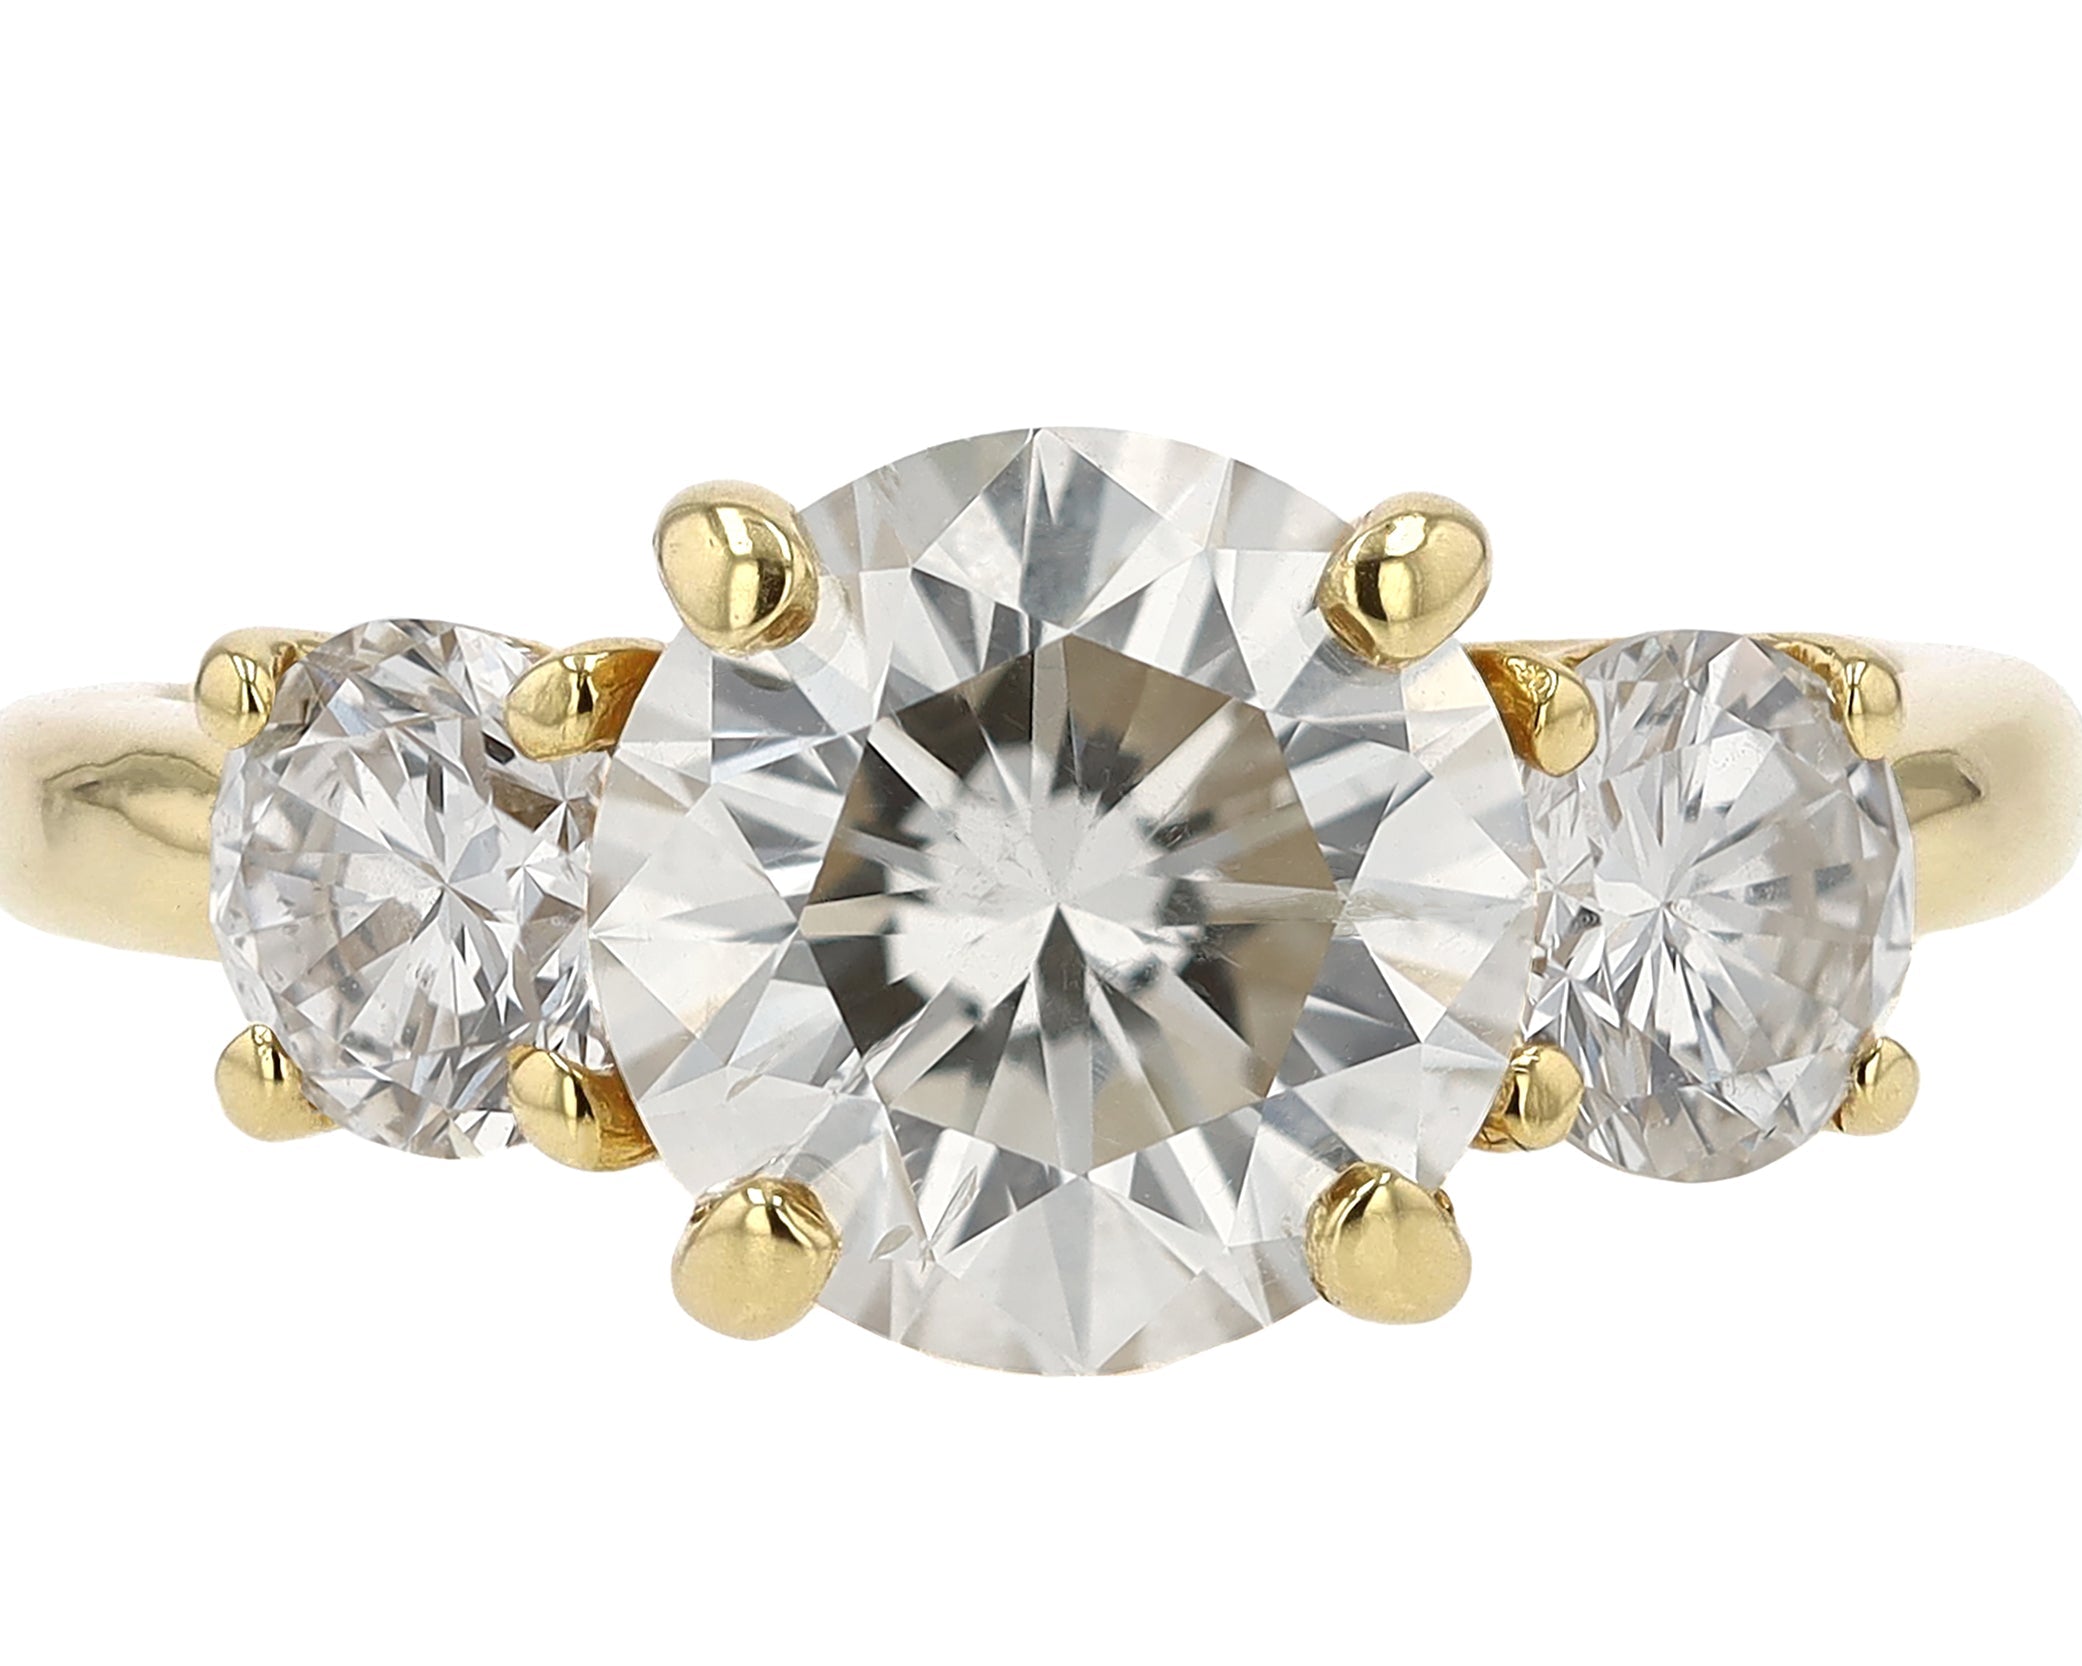 Vintage Estate 3.30 Carat Diamond Trilogy Engagement Ring